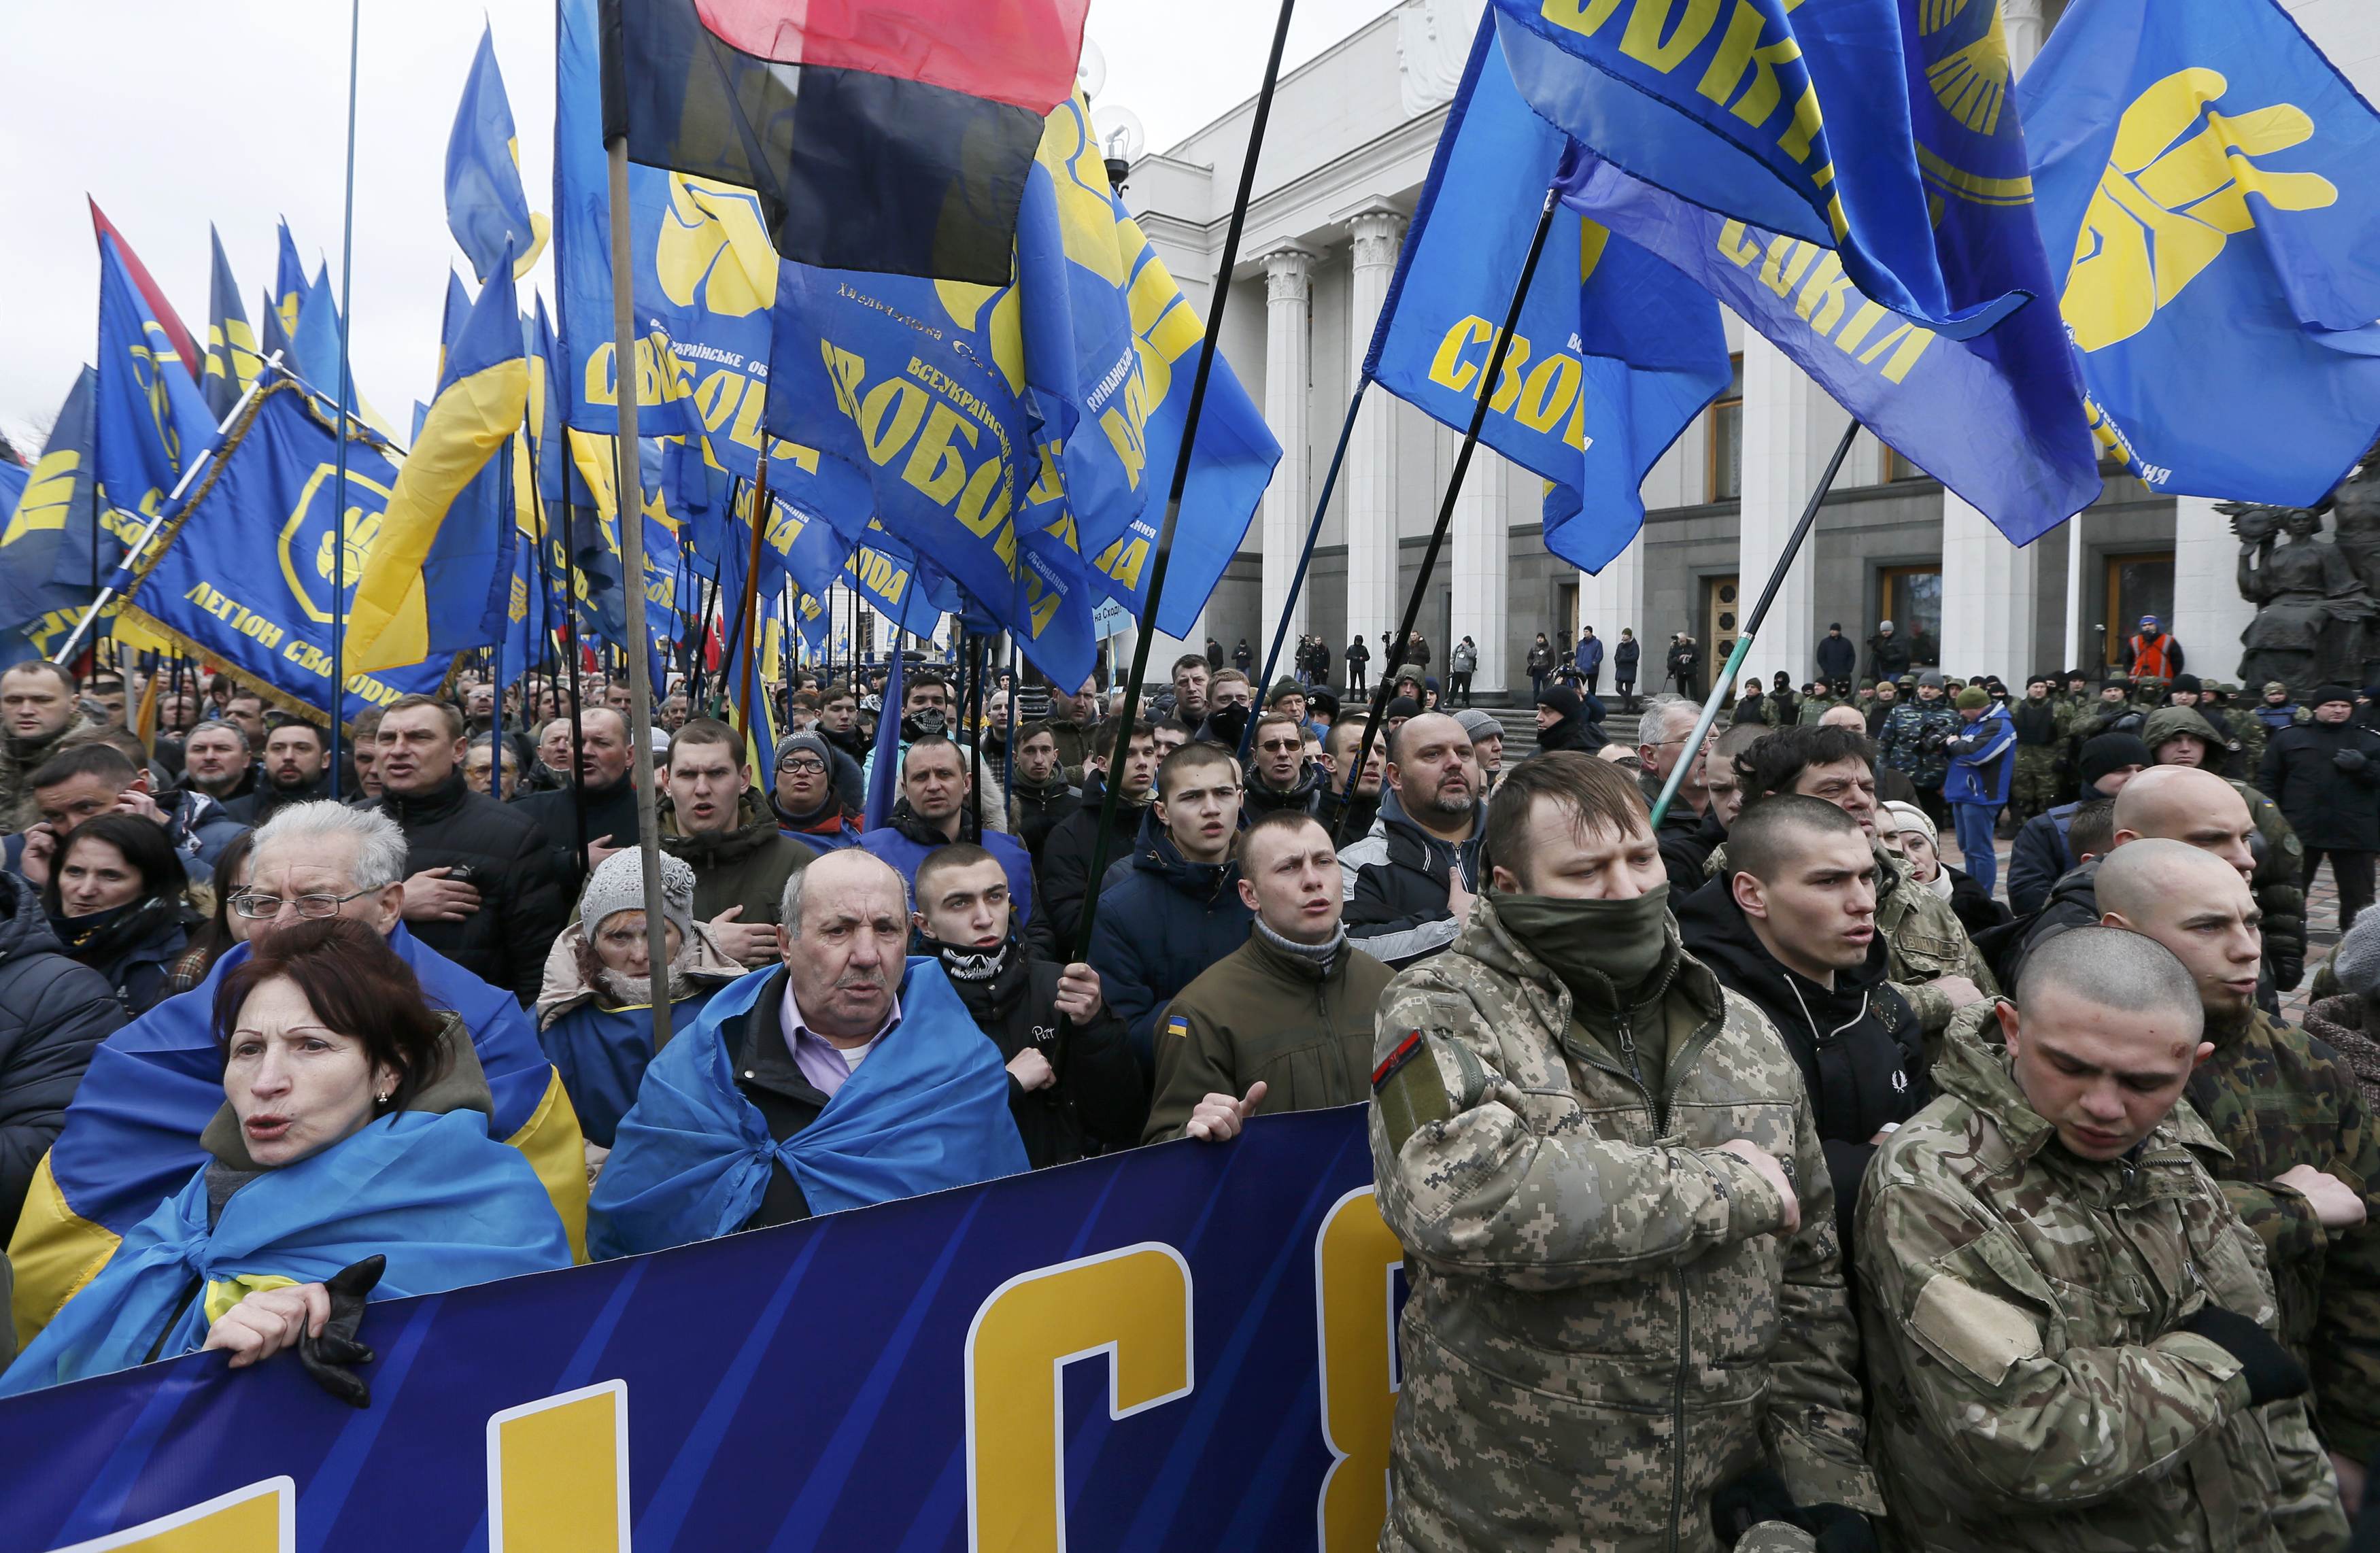 جماعات قومية تُحيى الذكرى السنوية للاحتجاجات الموالية لأوروبا في كييف